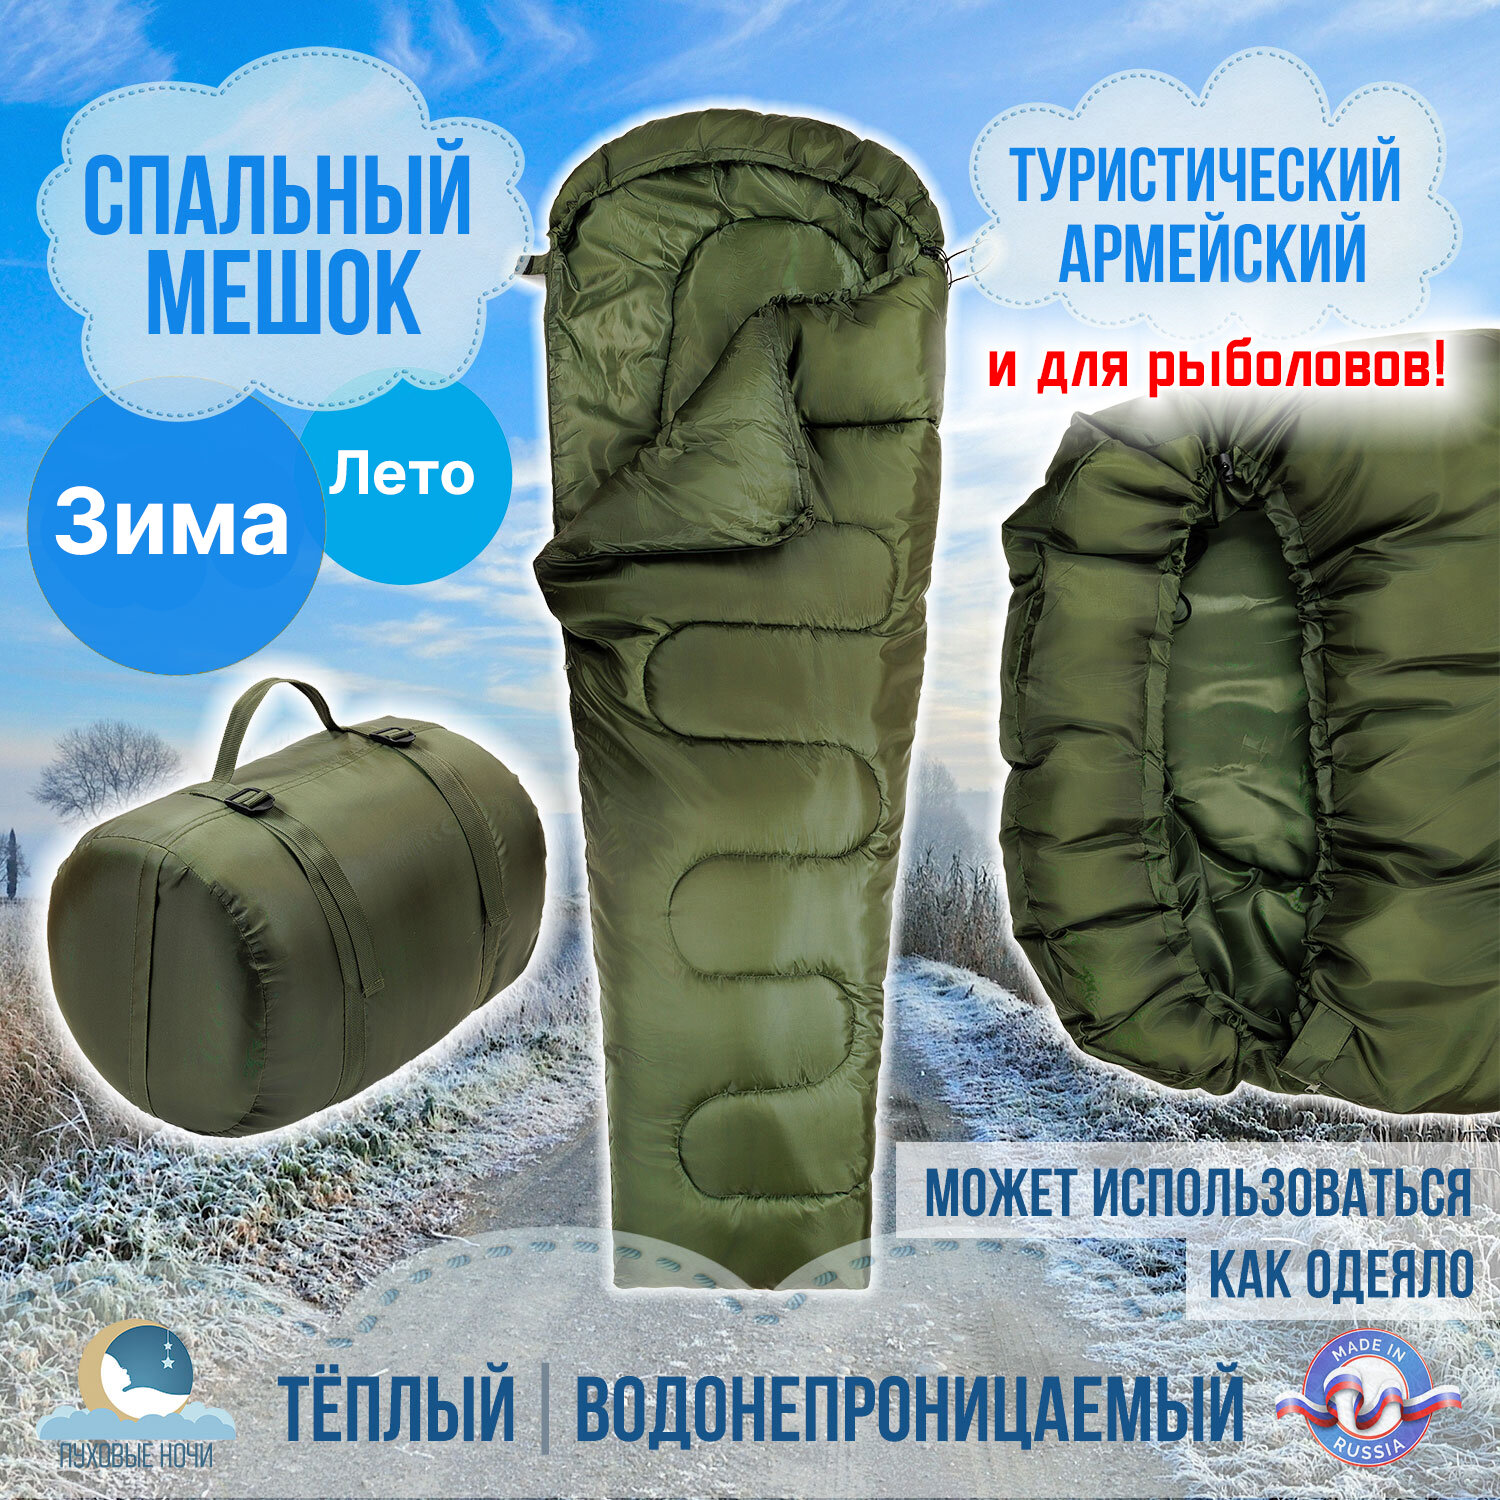 Спальный мешок всесезонный, туристический, армейский, для рыболовов, фабричное производство